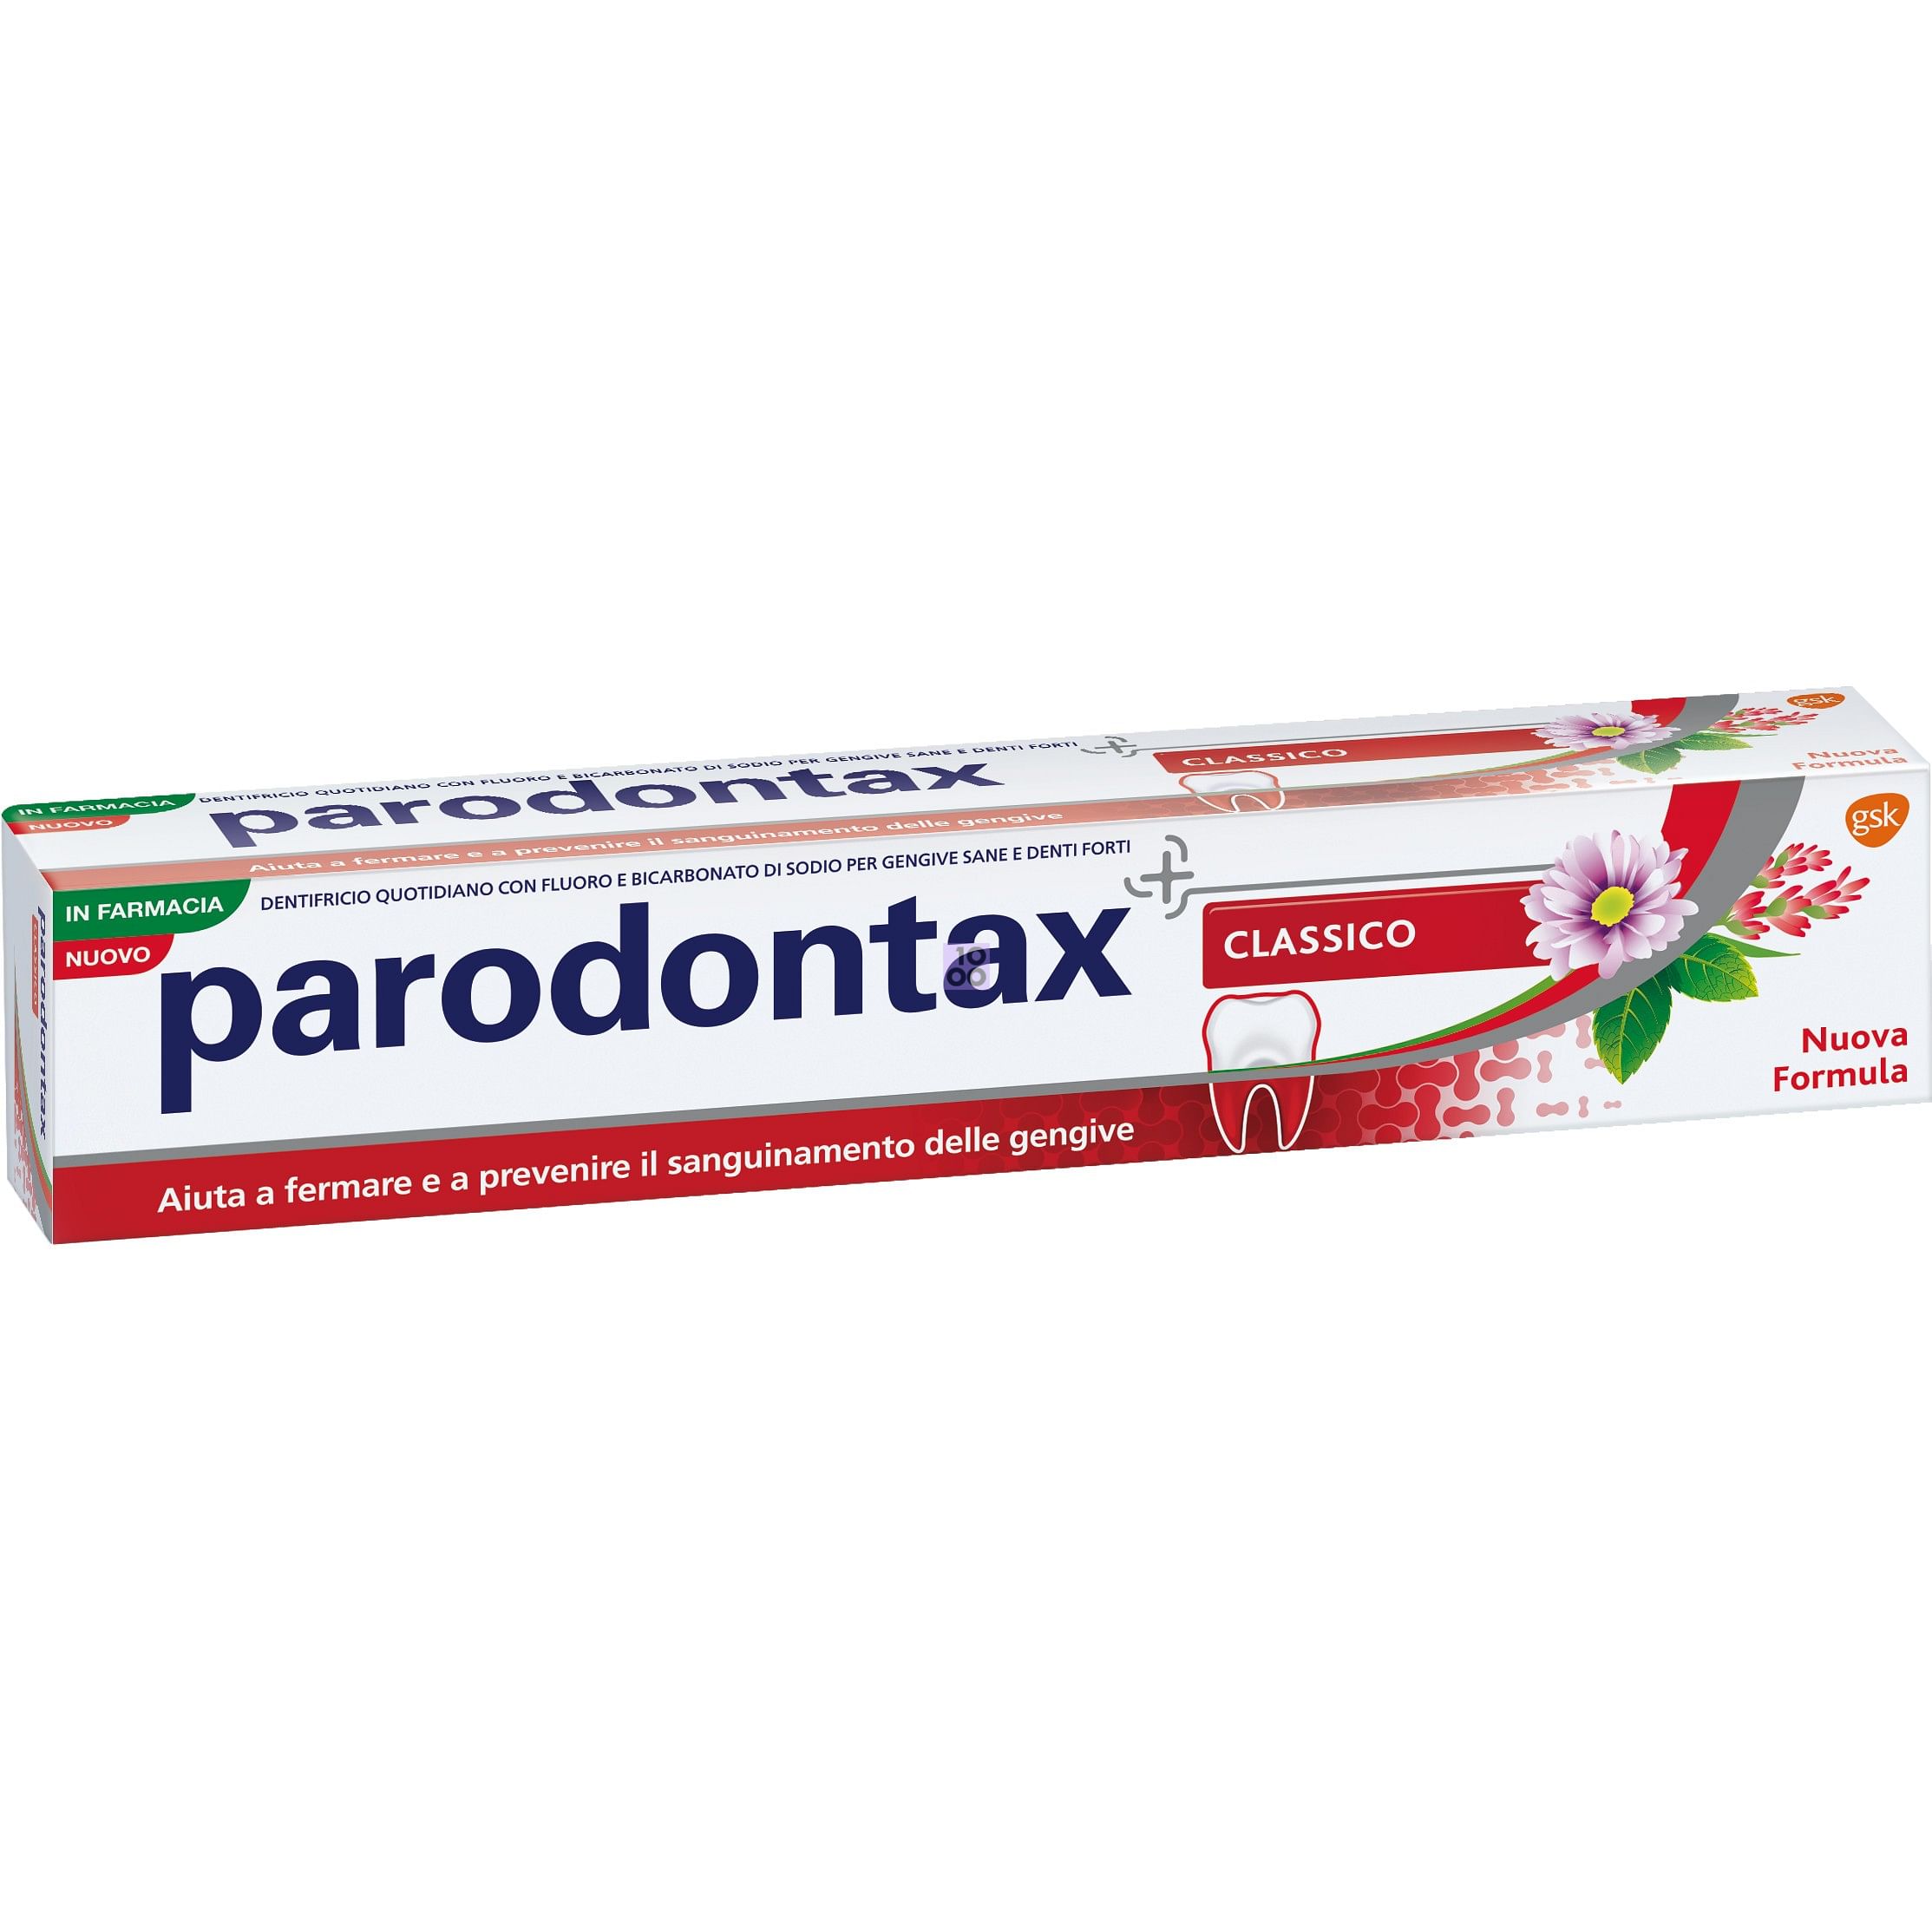 Купить зубную пасту парадонтакс. Парадонтакс Классик. Parodontax Gum зубная паста.